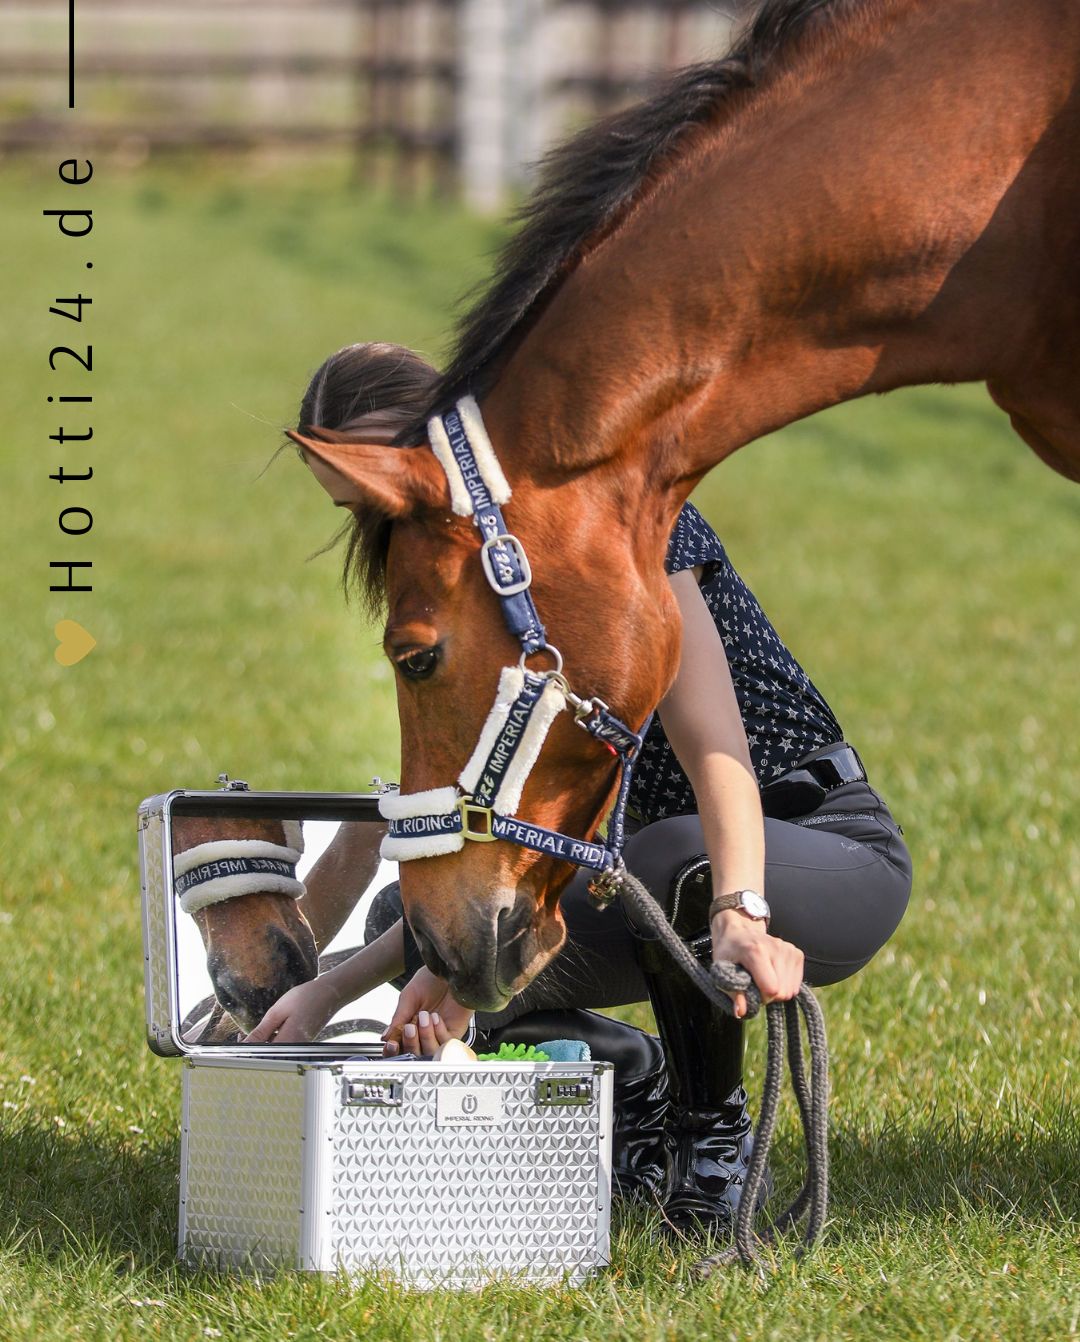 Imperial Riding »Pferde Putzbox Putzkoffer Shiny Silber, unser Bestseller Putzbox Shiny ist das perfekte Beauty-Case zur Aufbewahrung all deiner Pflegeprodukte und Accessoires Artikelnummer ST68120002-7034 erhältlich bei www.Hotti24.de